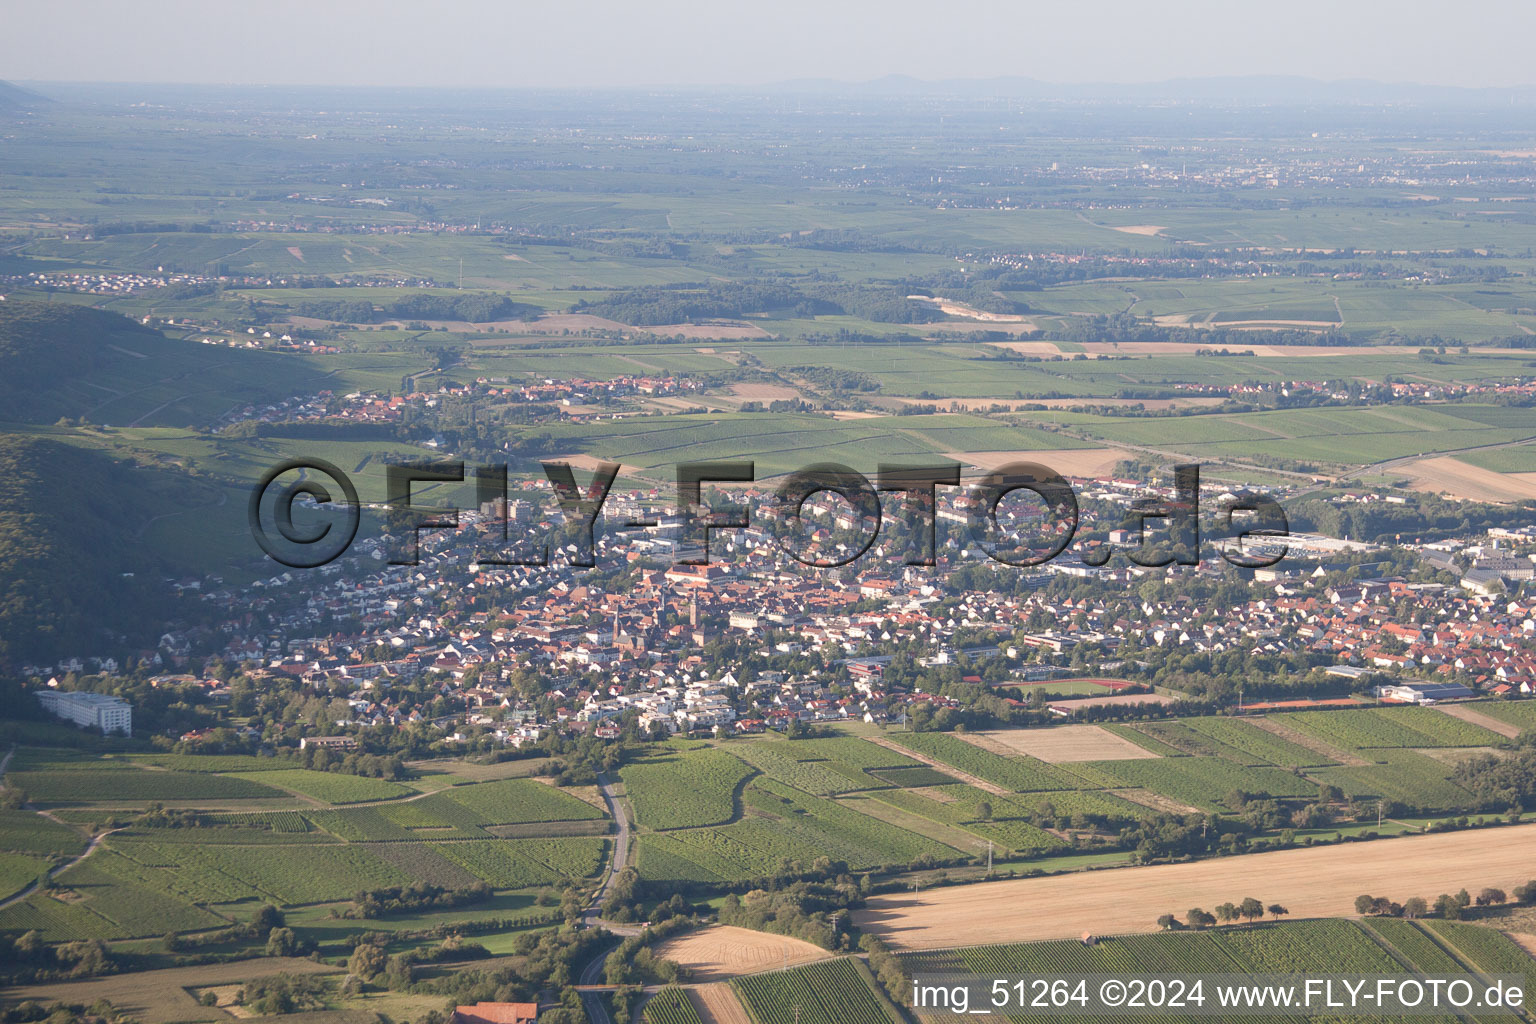 Bad Bergzabern dans le département Rhénanie-Palatinat, Allemagne du point de vue du drone